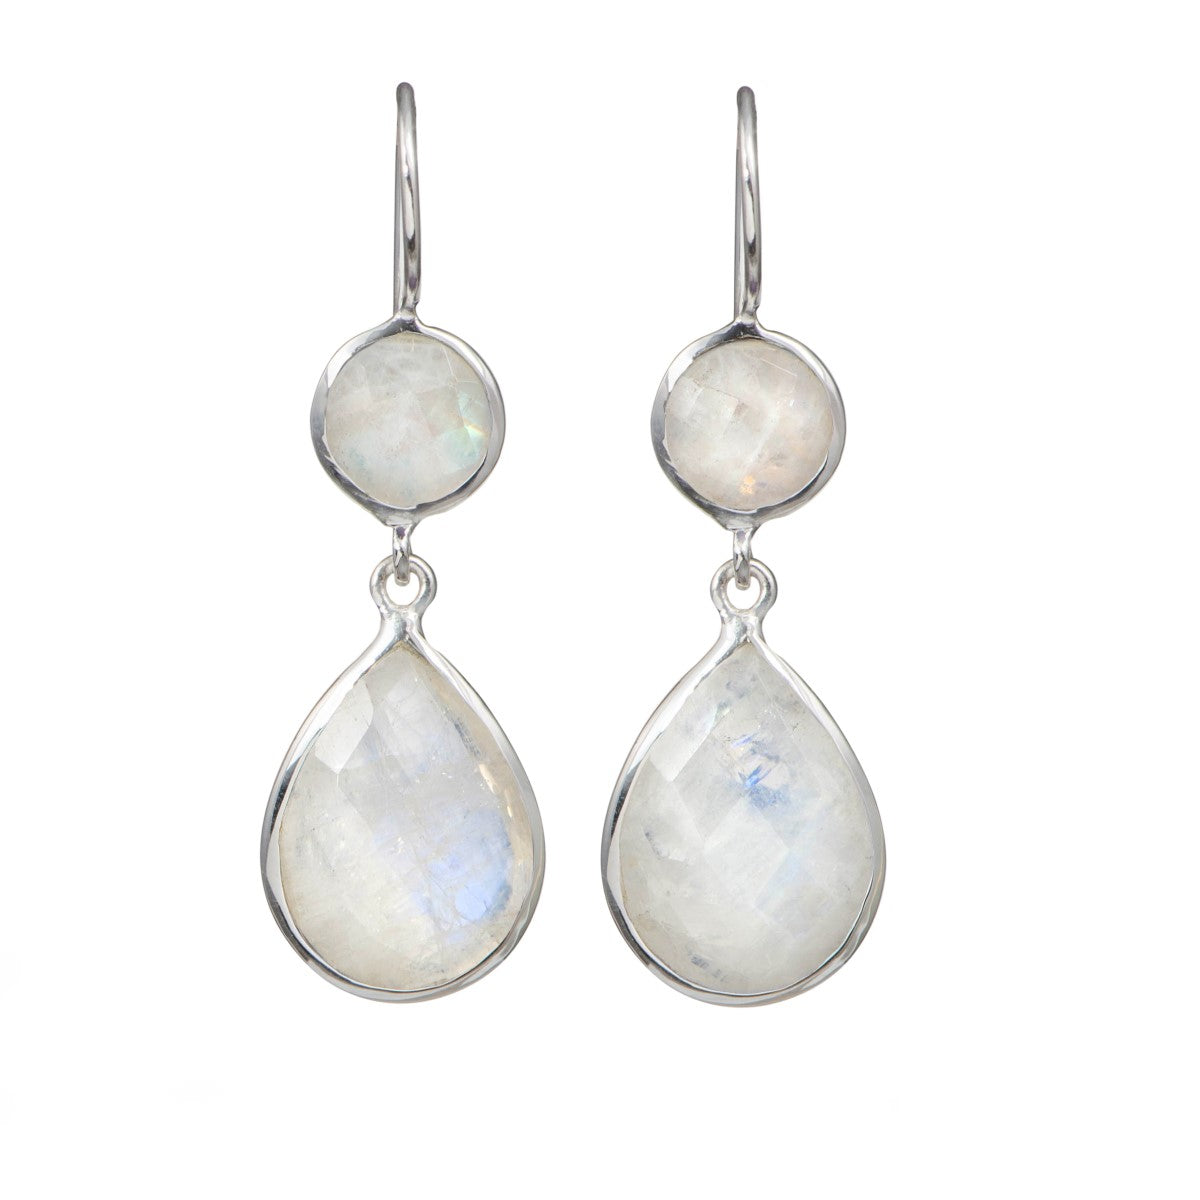 Moonstone Gemstone Two Stone Earrings in Sterling Silver - Teardrop